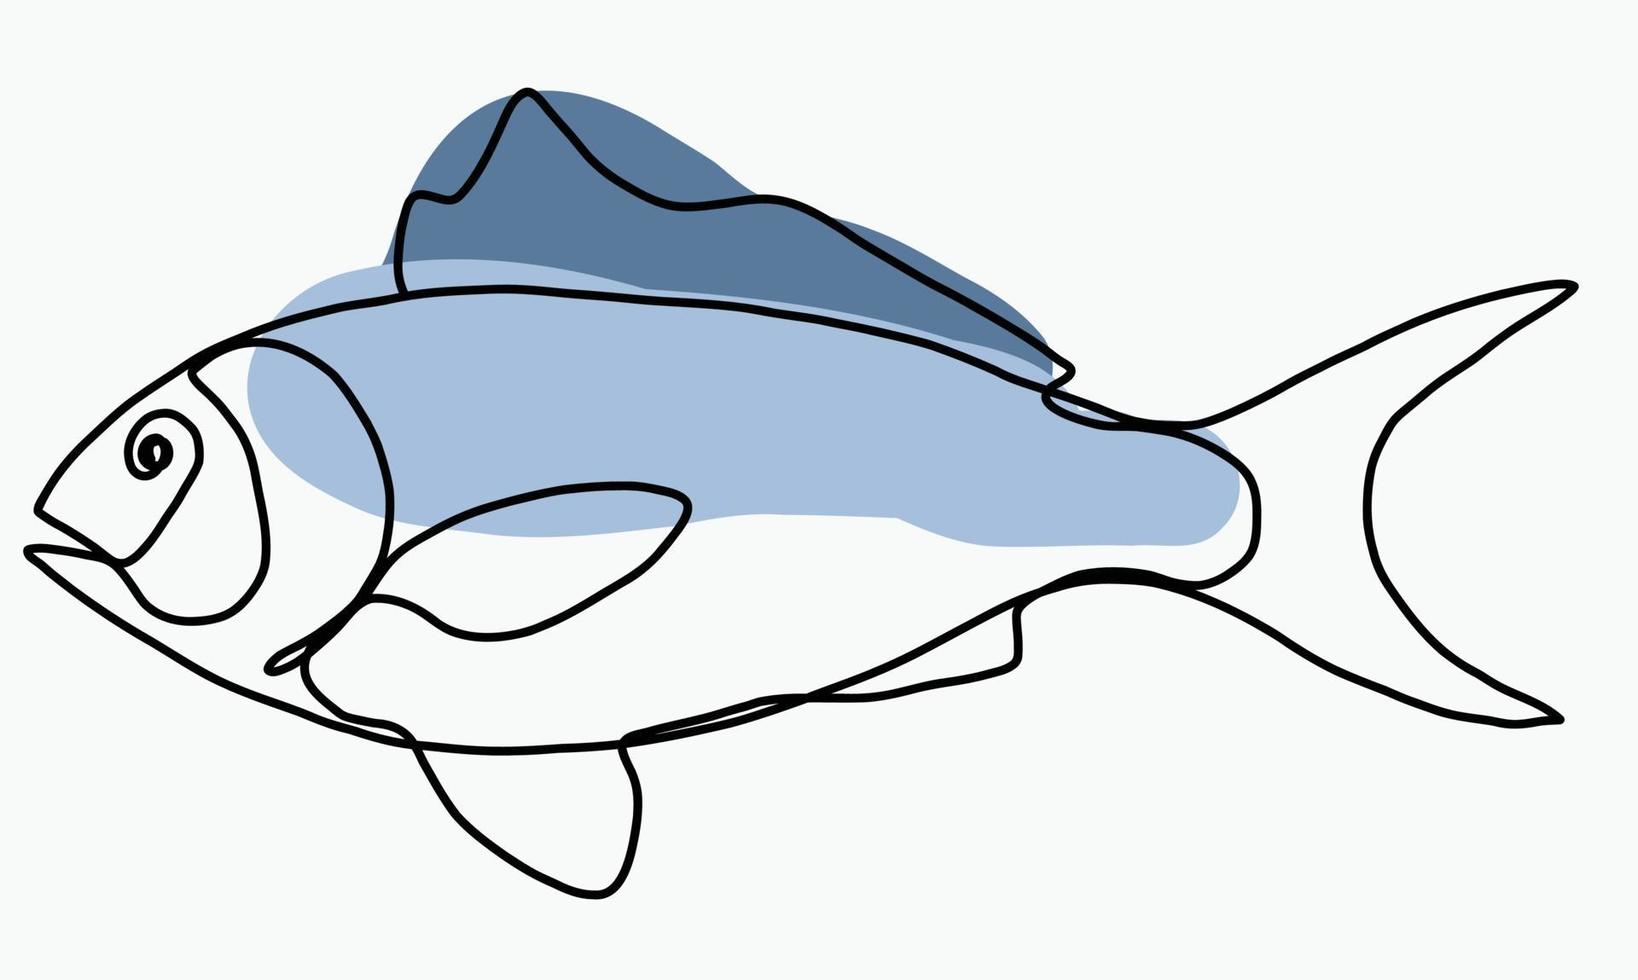 doodle frihand skiss kontinuerlig ritning av fisk. vektor